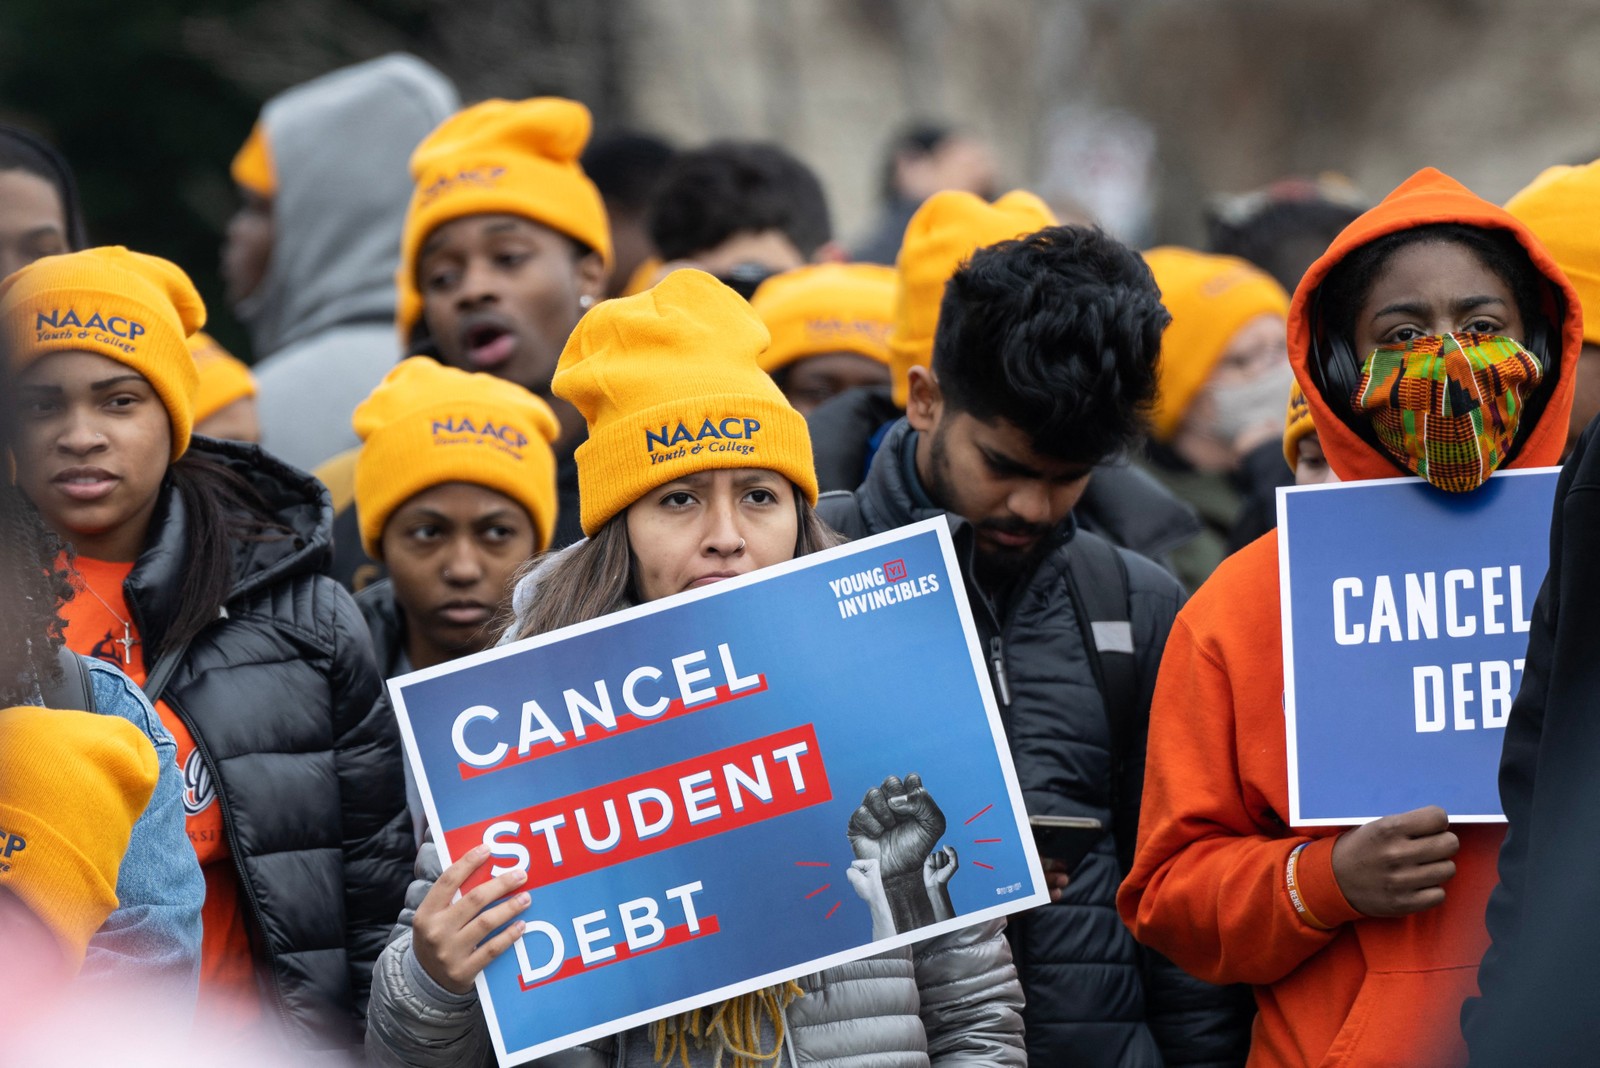 Ativistas e estudantes protestam em frente à Suprema Corte durante uma manifestação pelo cancelamento de dívidas estudantis em Washington — Foto: ANDREW CABALLERO-REYNOLDS/AFP